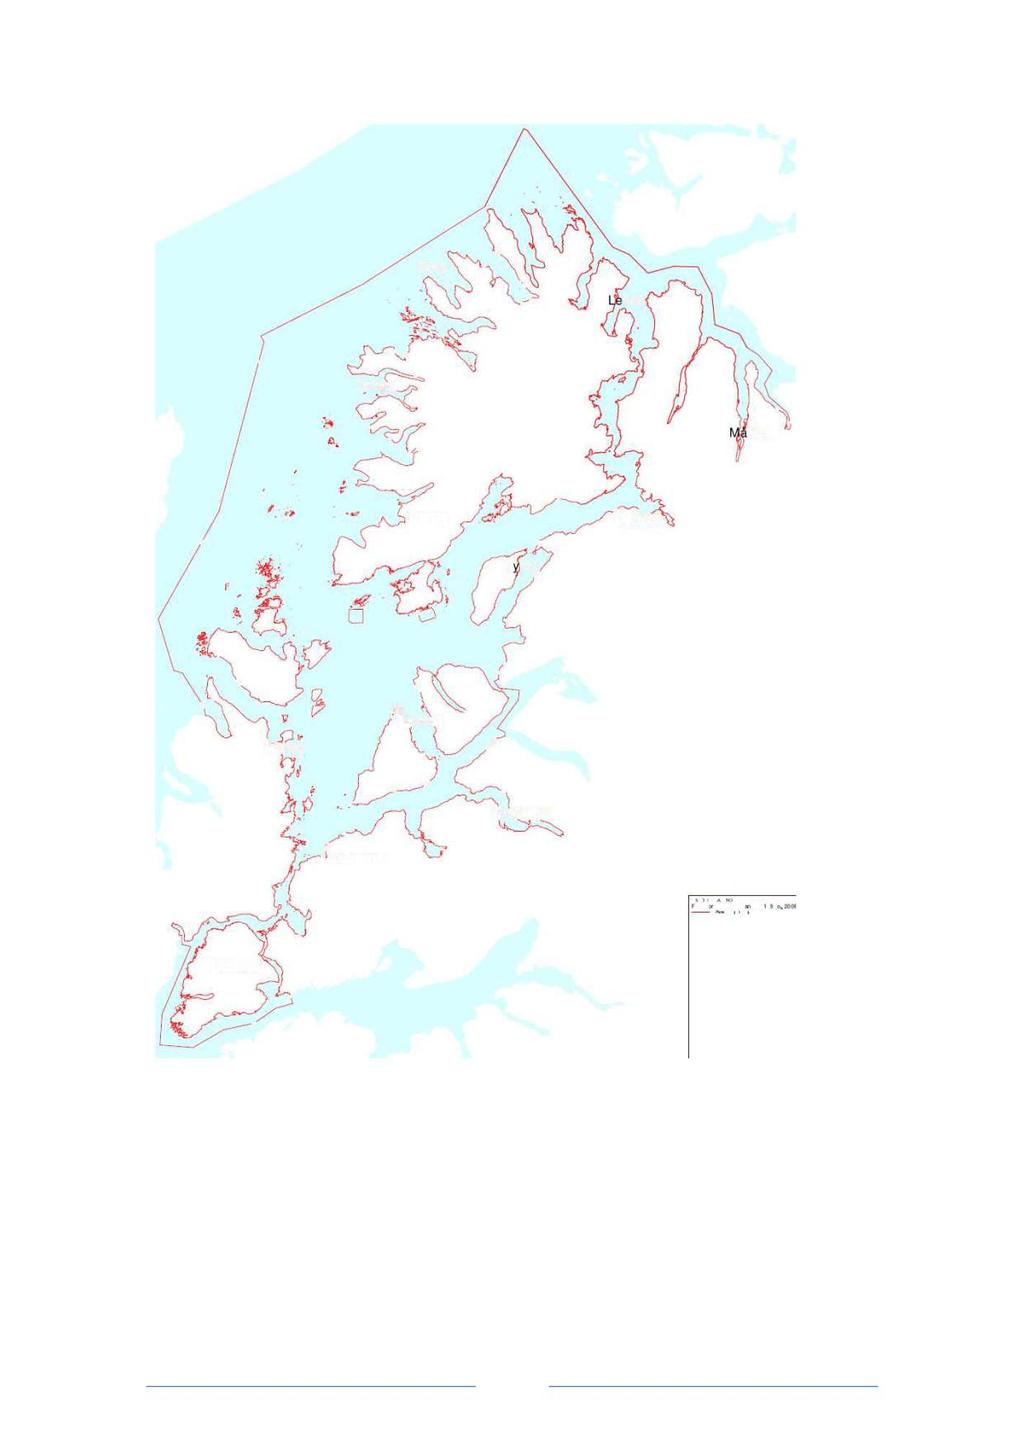 Dette kart kan brukes som oversiktskart. Detaljert kart kan f.eks. skrives ut fra tilgjengelige kartportaler. Eksempel: TromsAtlas: www.tromsatlas.